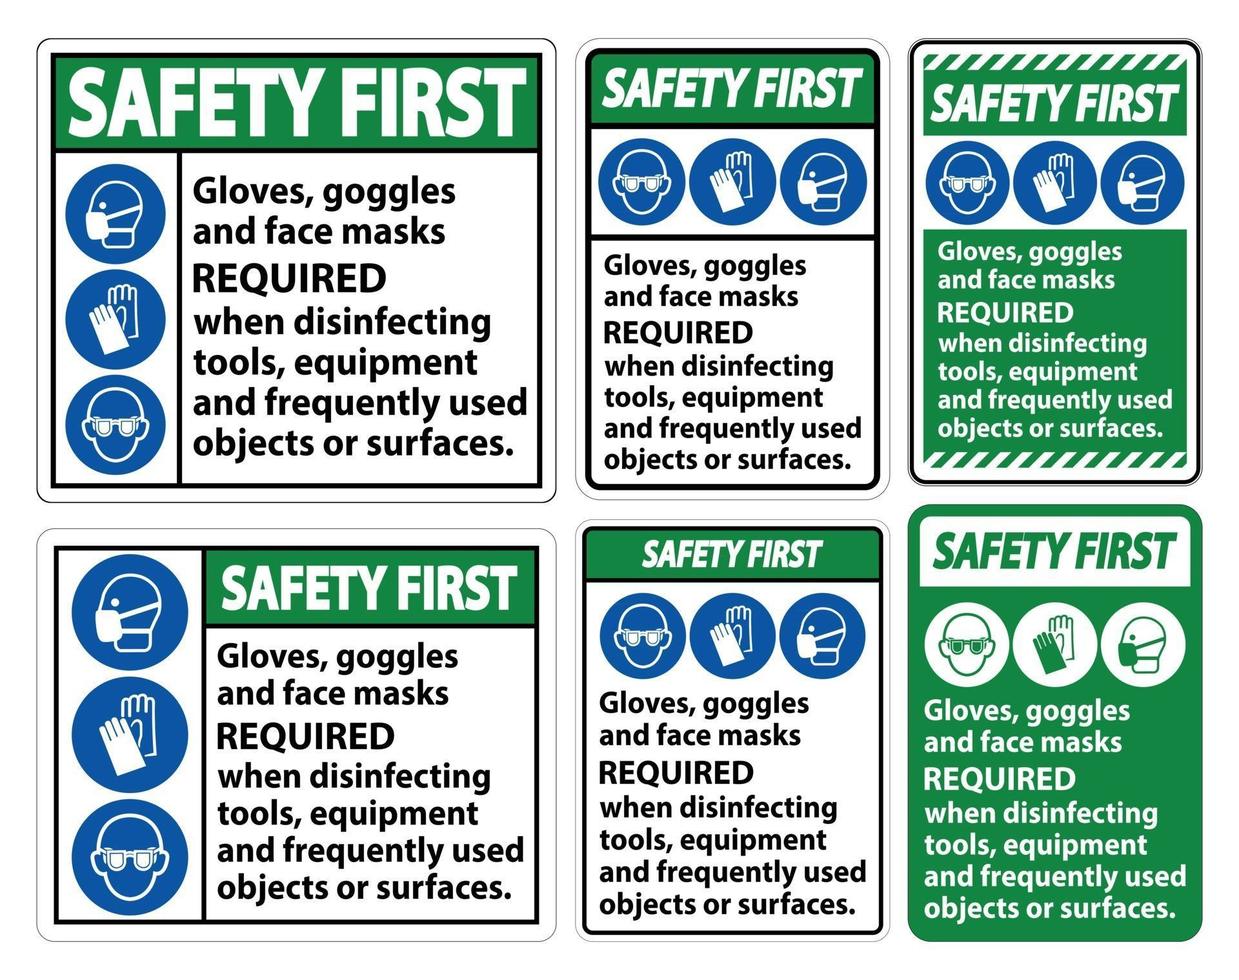 Premiers gants de sécurité, lunettes et masques requis signe sur fond blanc, illustration vectorielle eps.10 vecteur